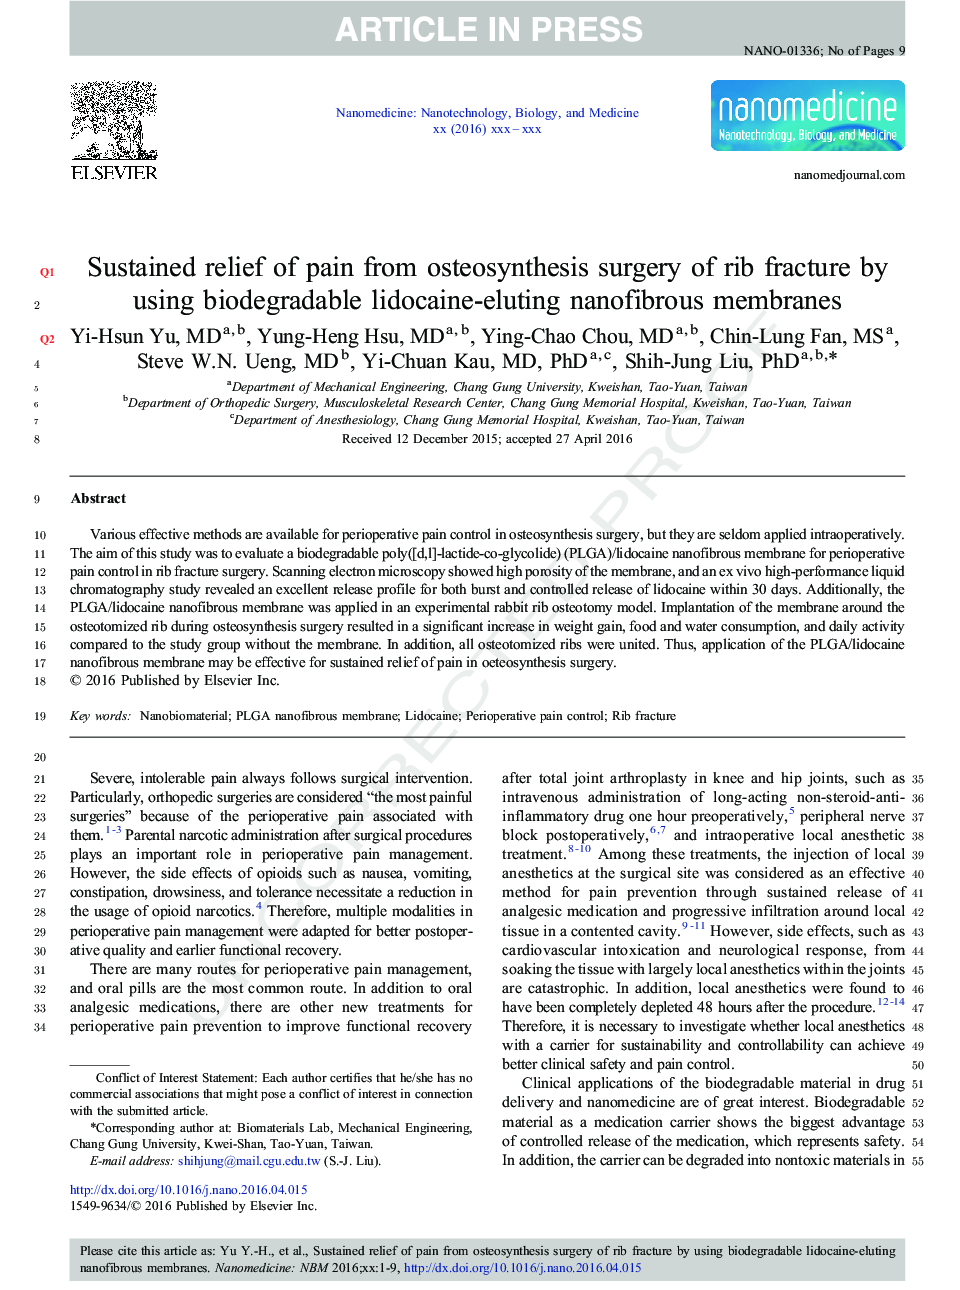 تسکین پایدار درد از عمل جراحی استئوآرزئونیک شکستگی رگ با استفاده از غشاهای نانوفیلتر لیدوکائین 